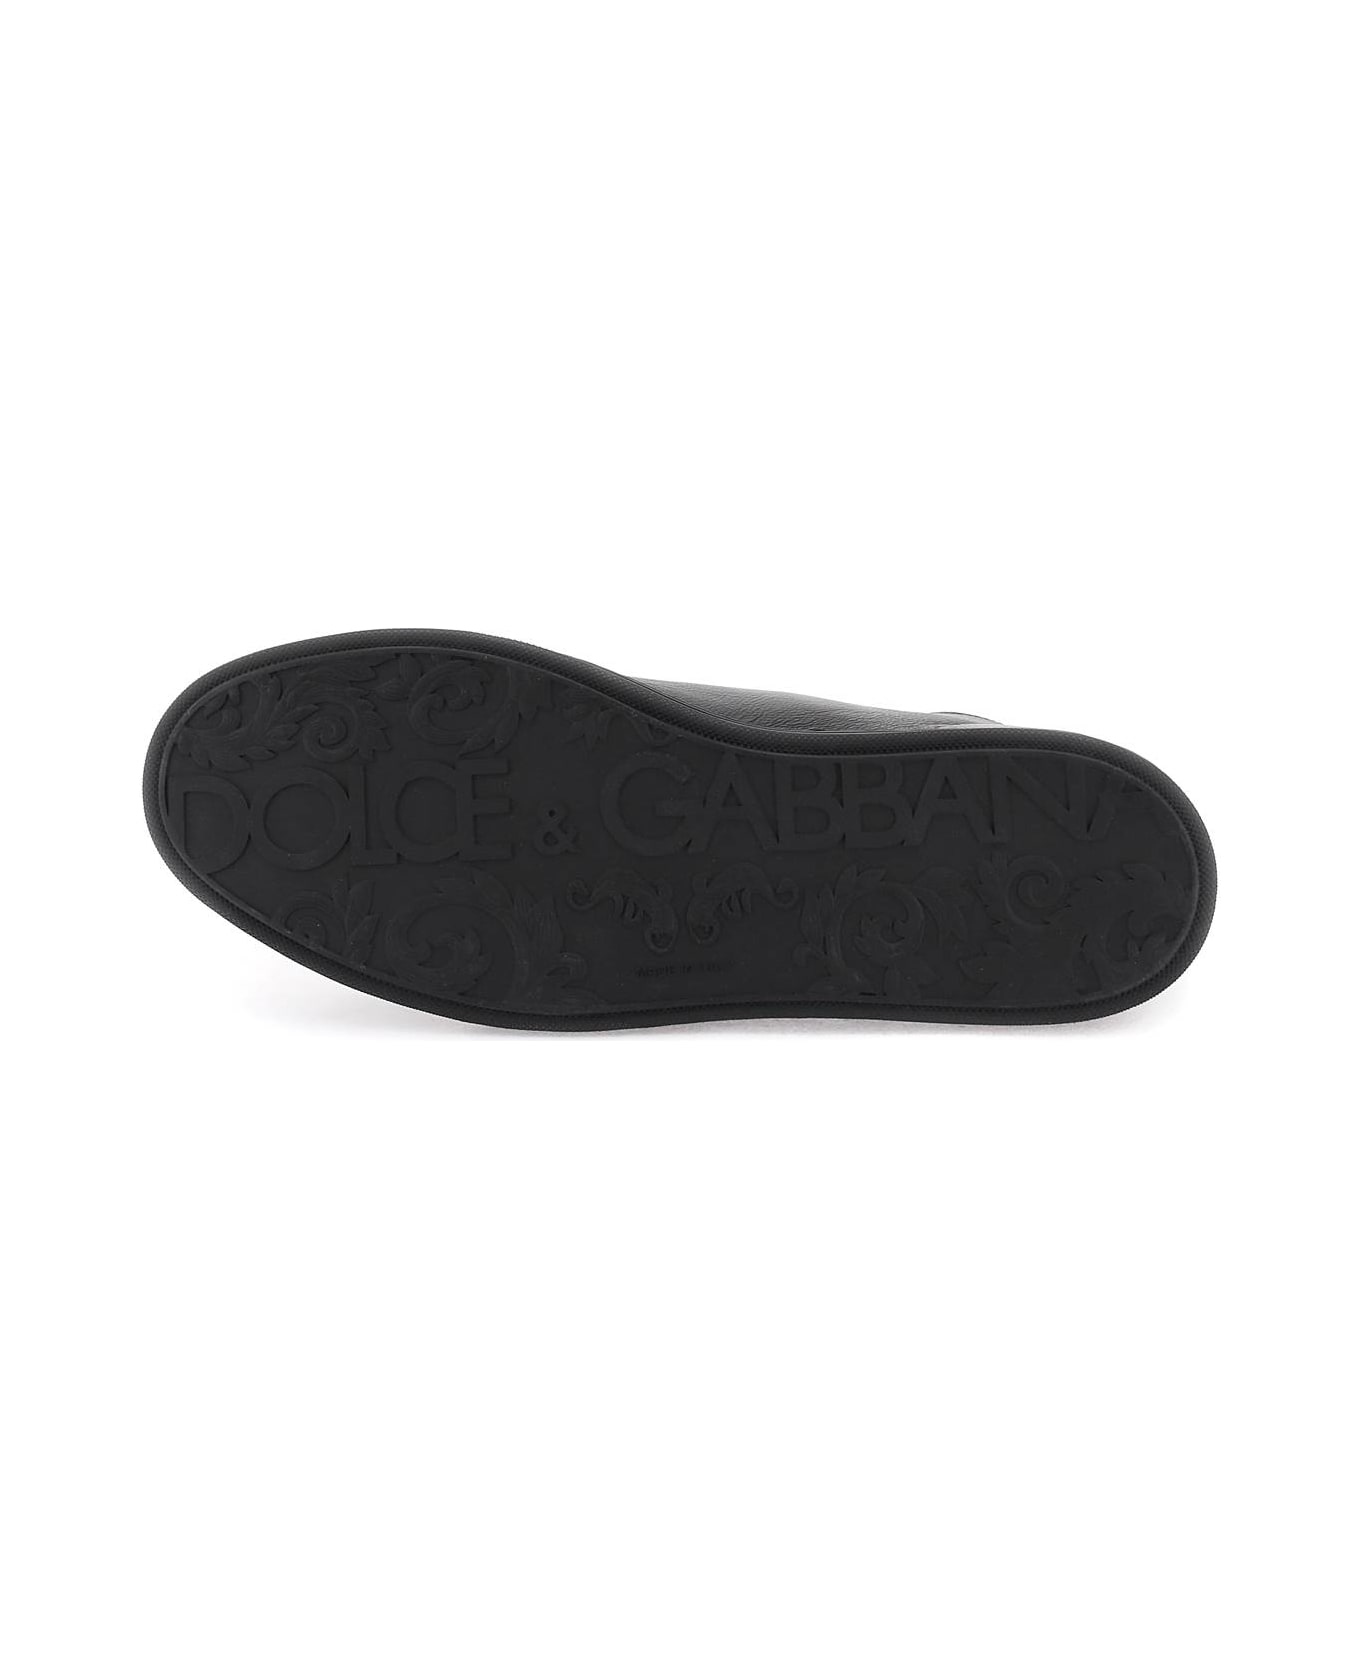 Dolce & Gabbana Saint Tropez Sneakers - Black